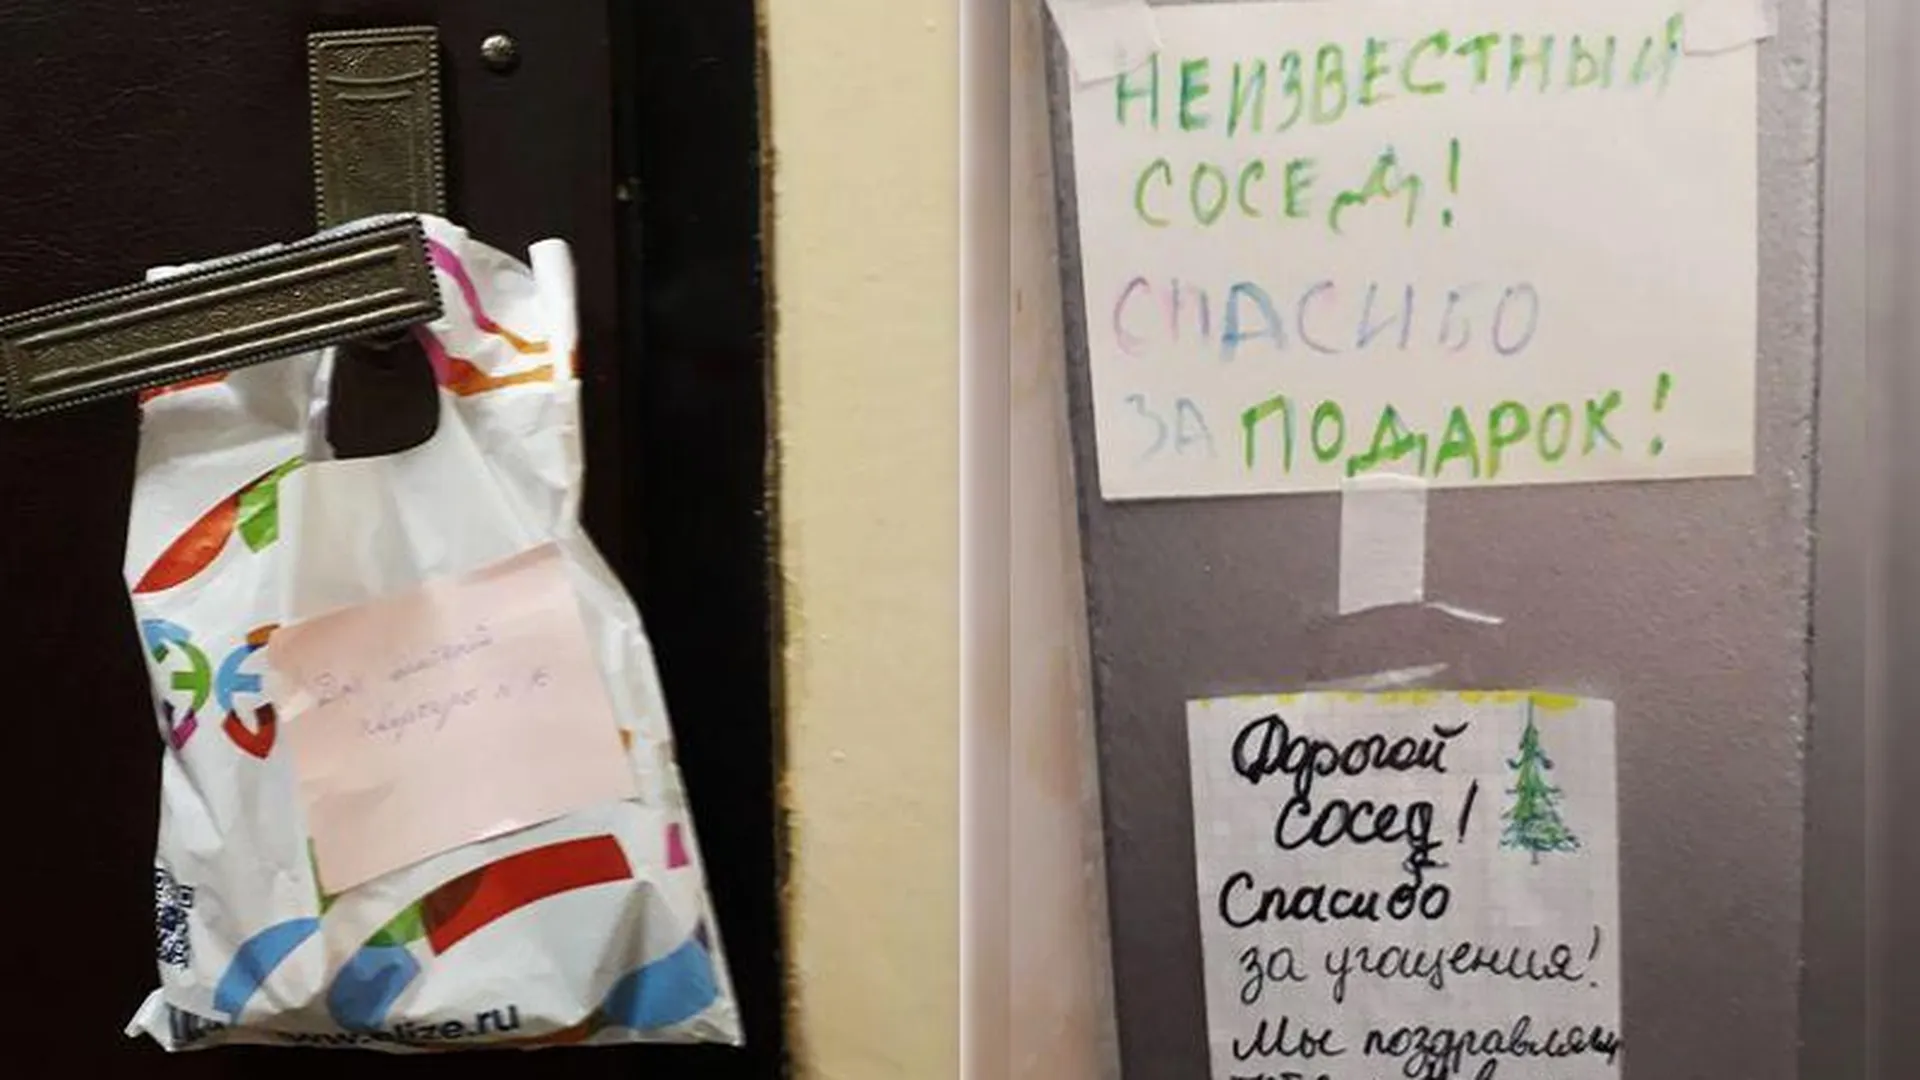 Помощник Деда Мороза шокировал жителей московского подъезда анонимной щедростью